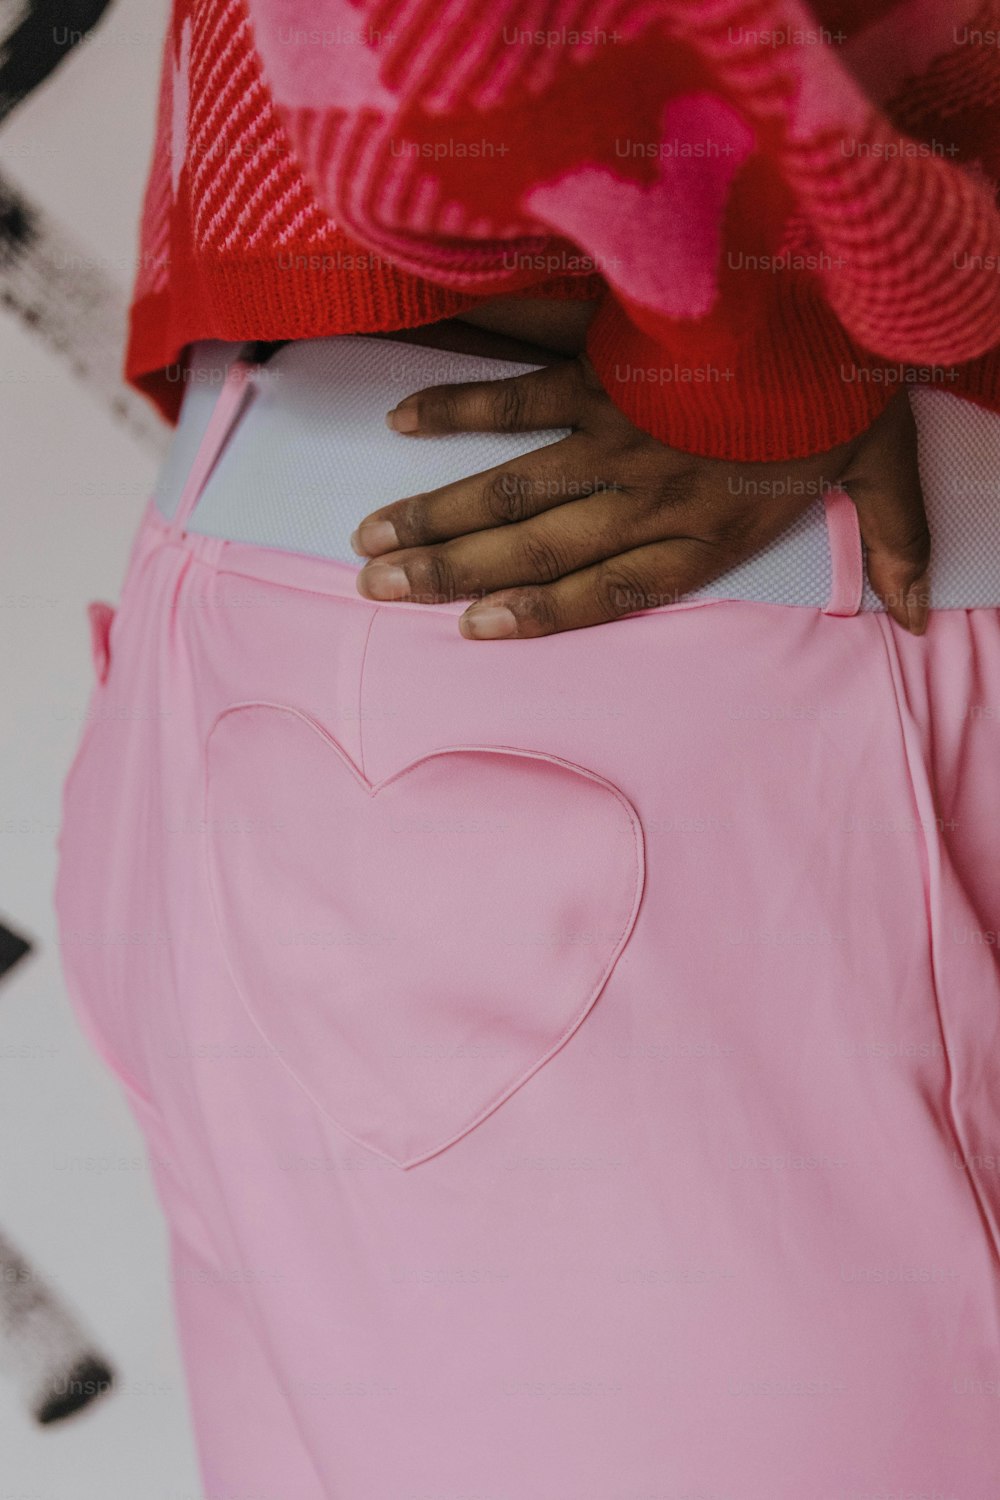 Un primer plano de una persona con una falda rosa